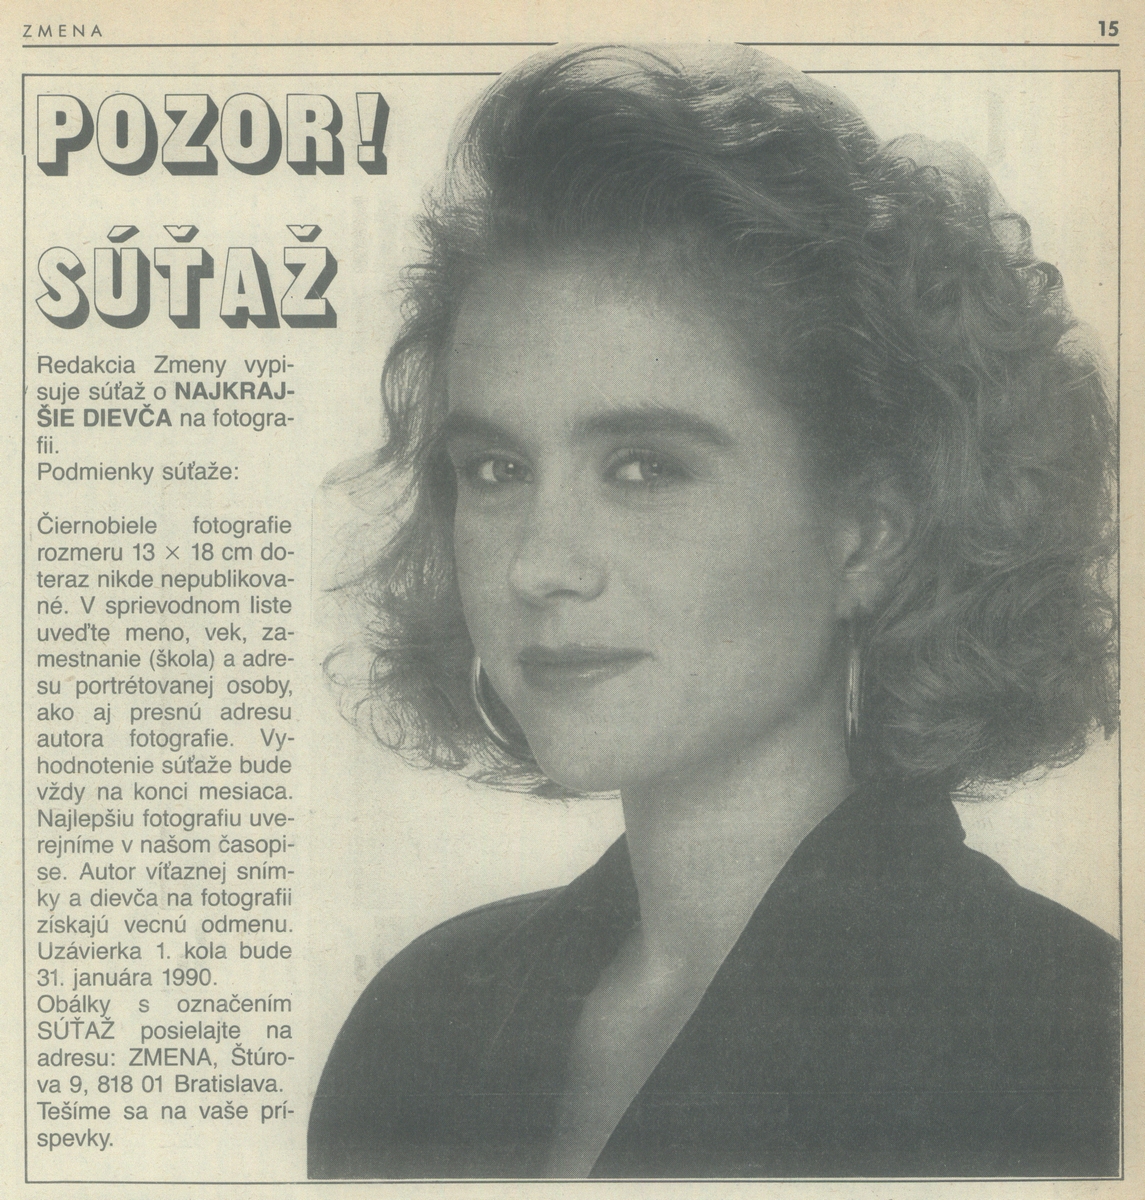 Súťaž o najkrajšie dievča, časopis Zmena. 1990. Univerzitná knižnica v Bratislave